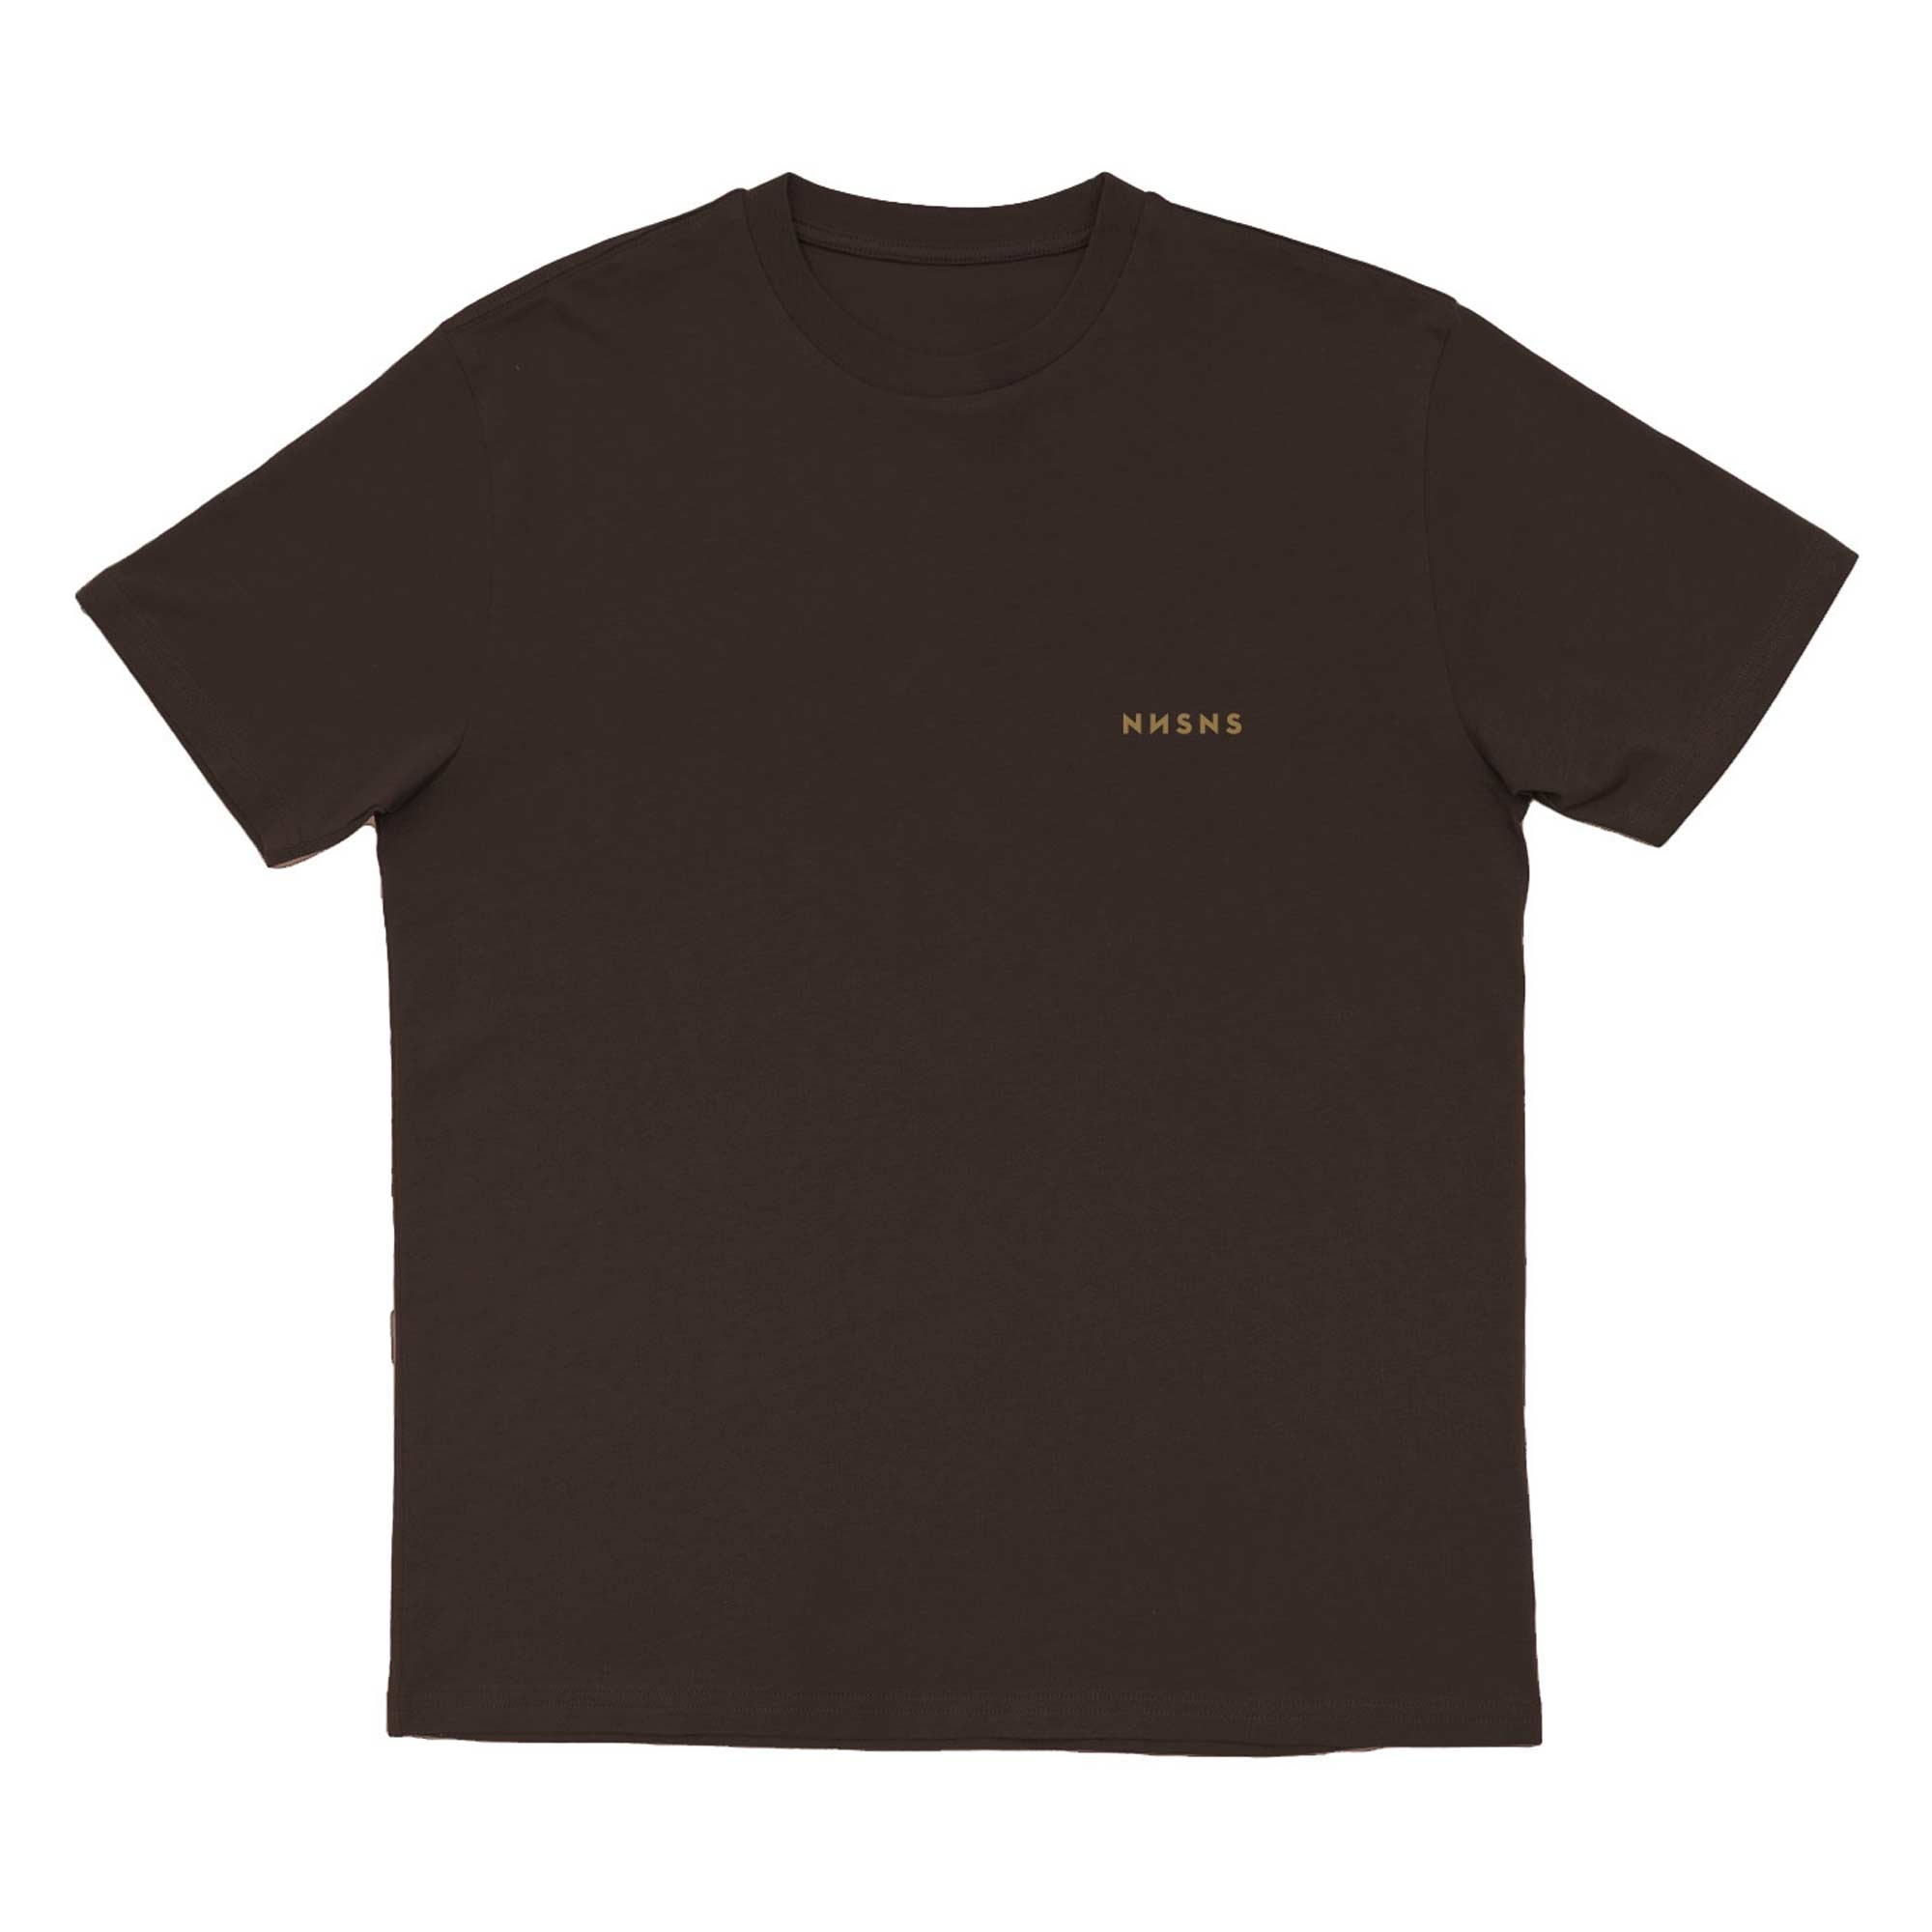 NNSNS T-Shirt SCRIPT EMBROIDERED brown/ochre